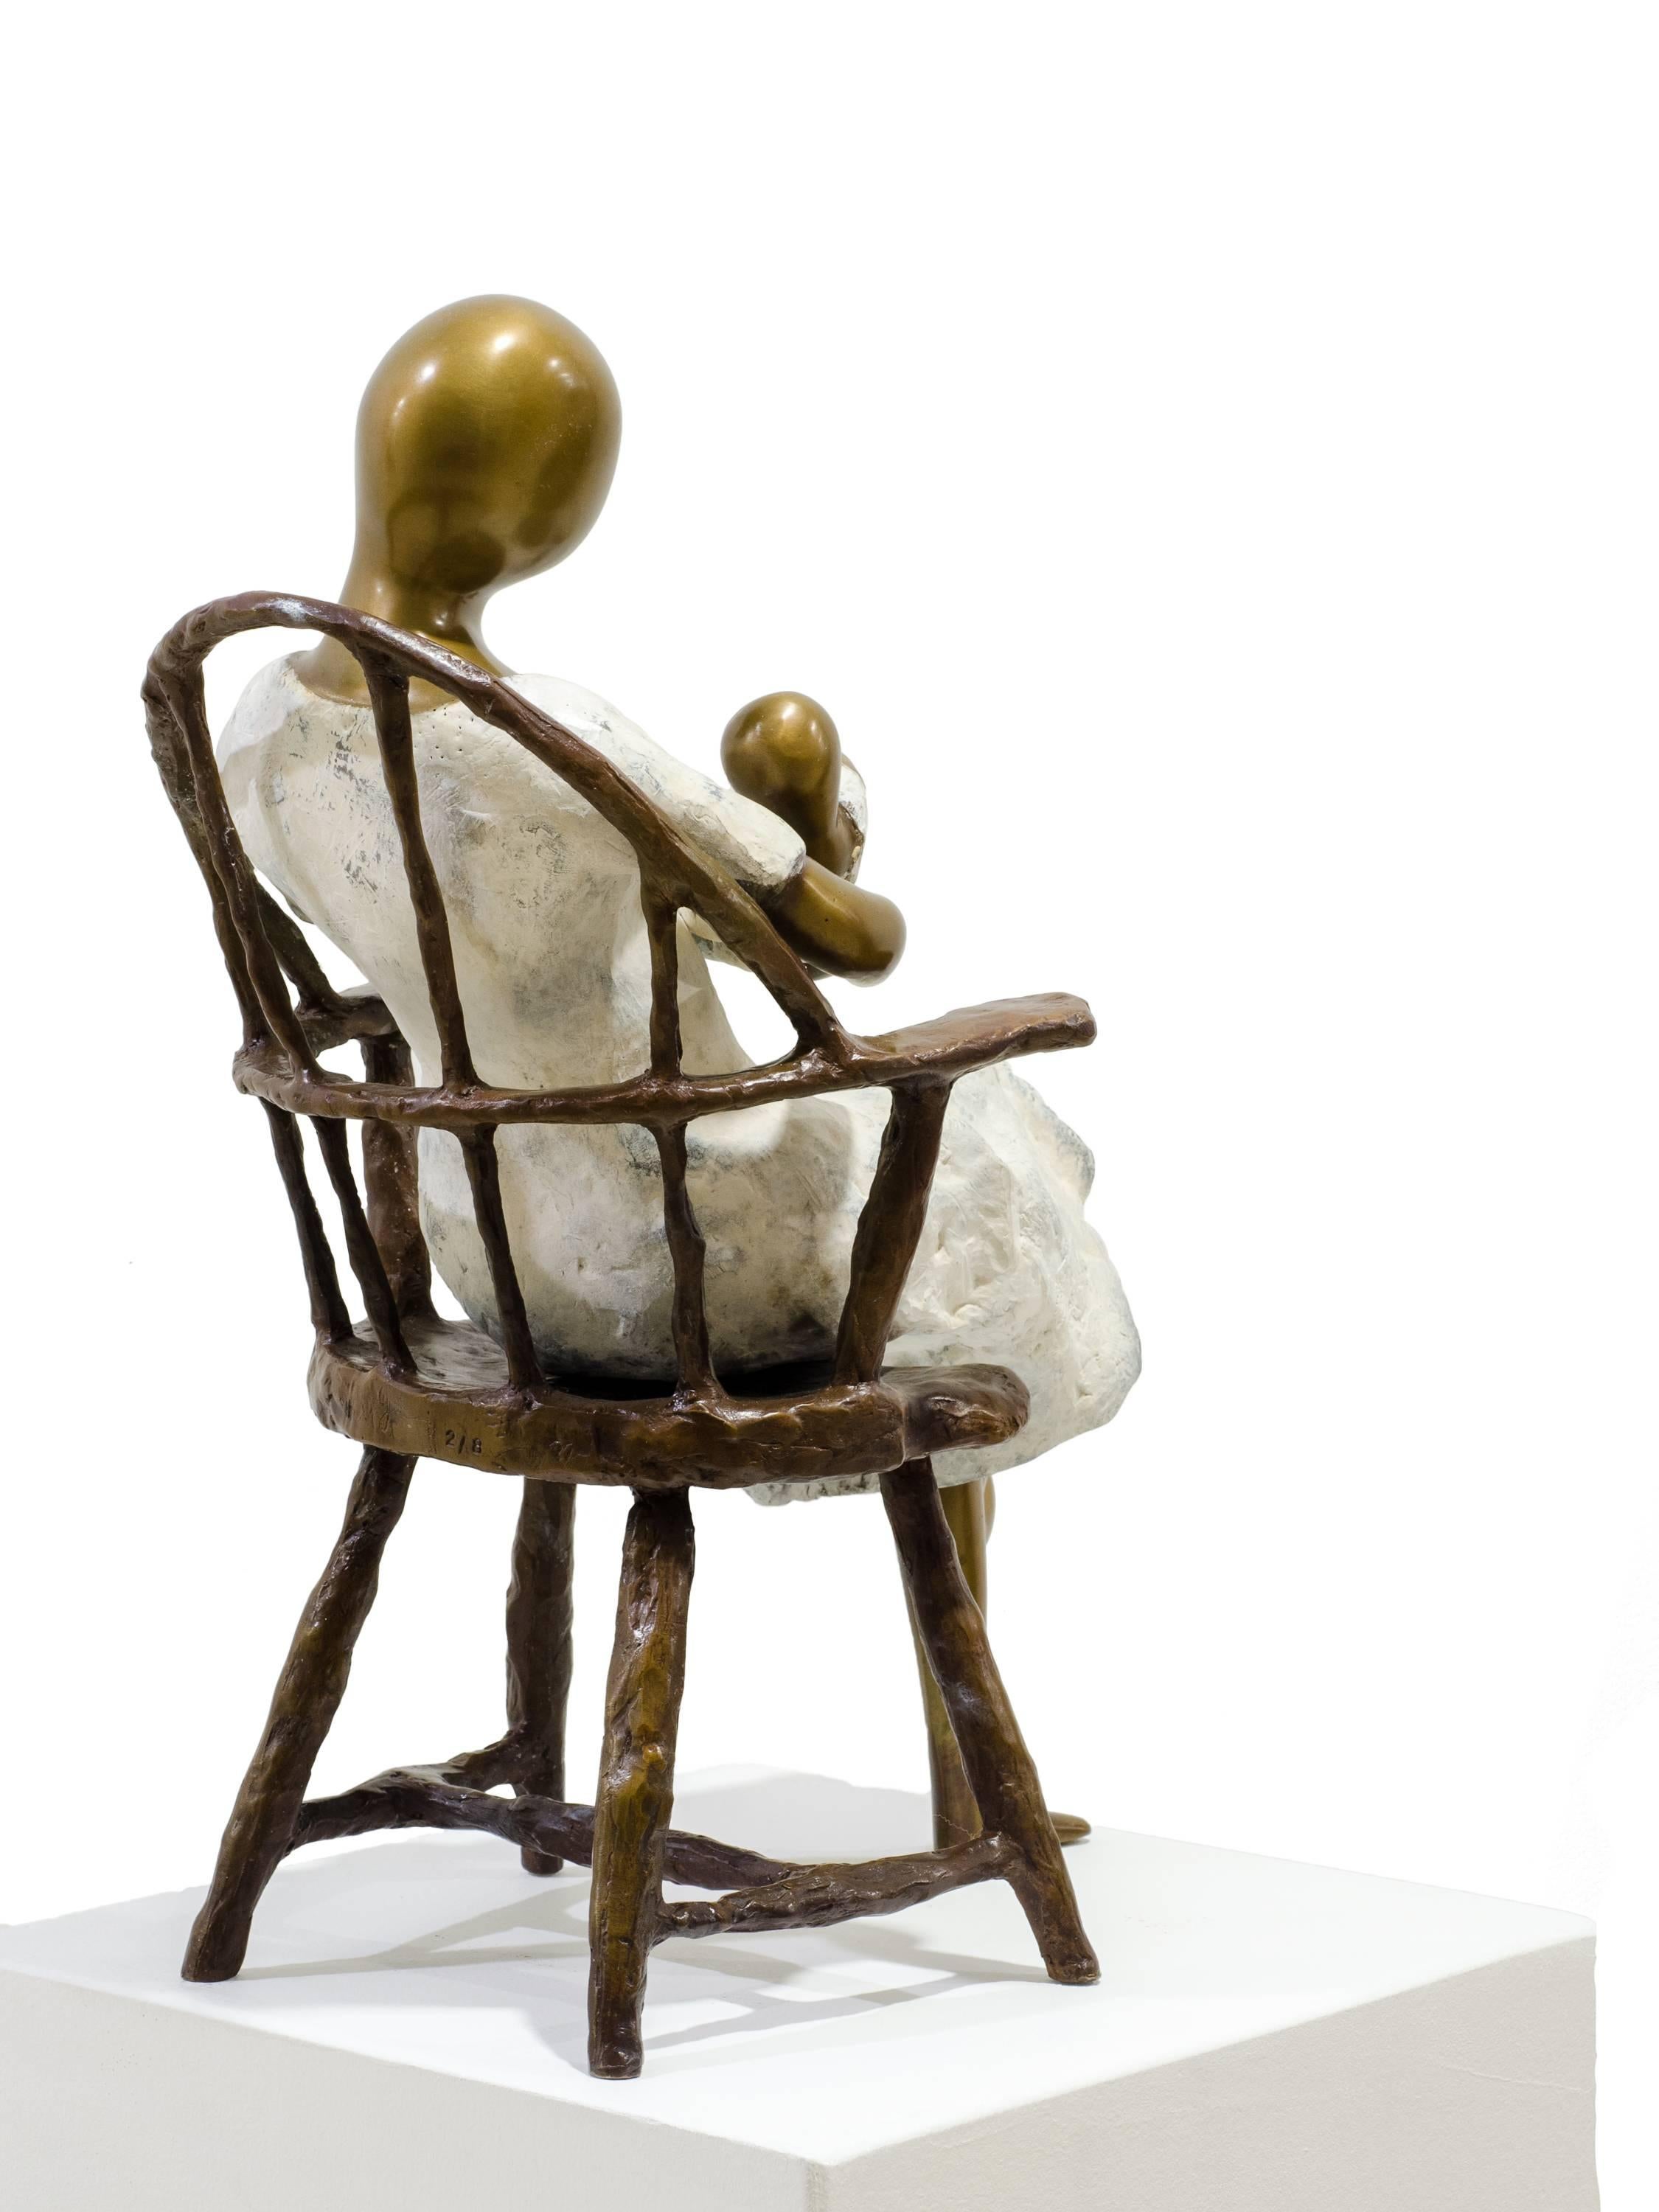 Mother in chair.  - Feminist Sculpture by Beatriz Gerenstein